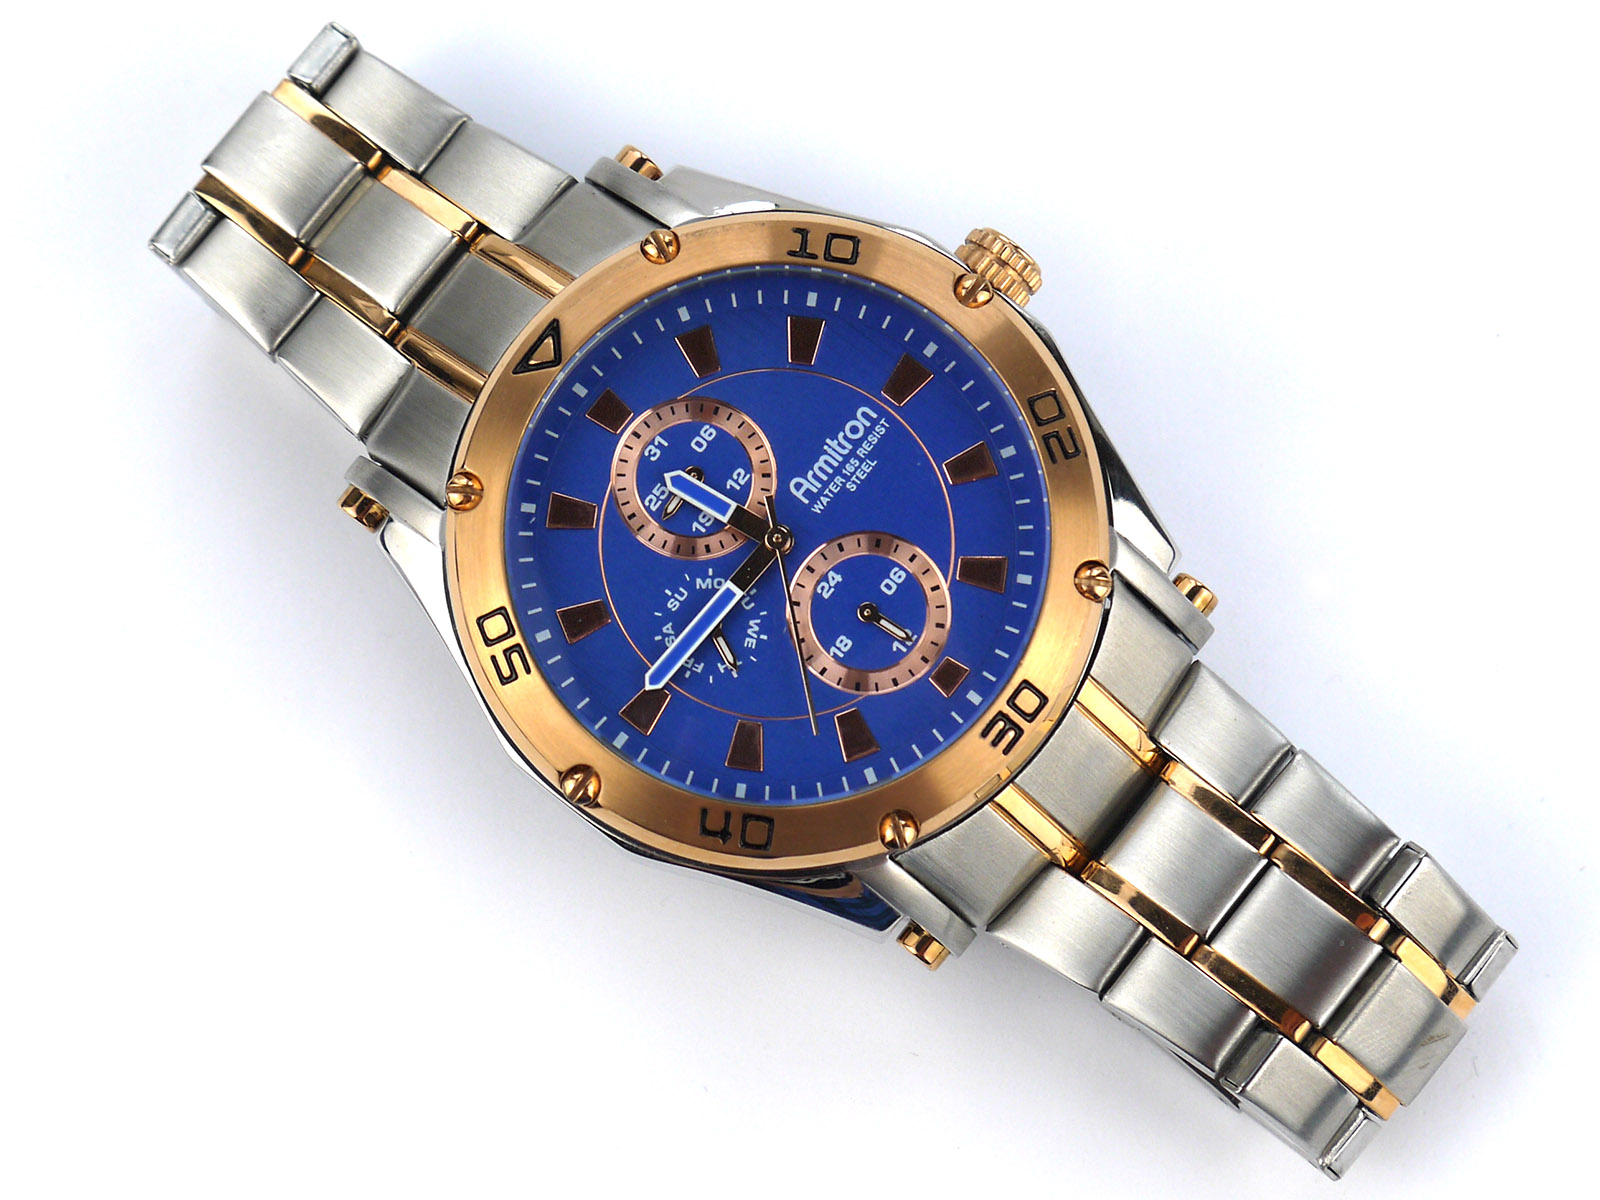 Armitron Men's 20-4957BLTR Multi-Function Blue Dial Two-Tone Bracelet Watch